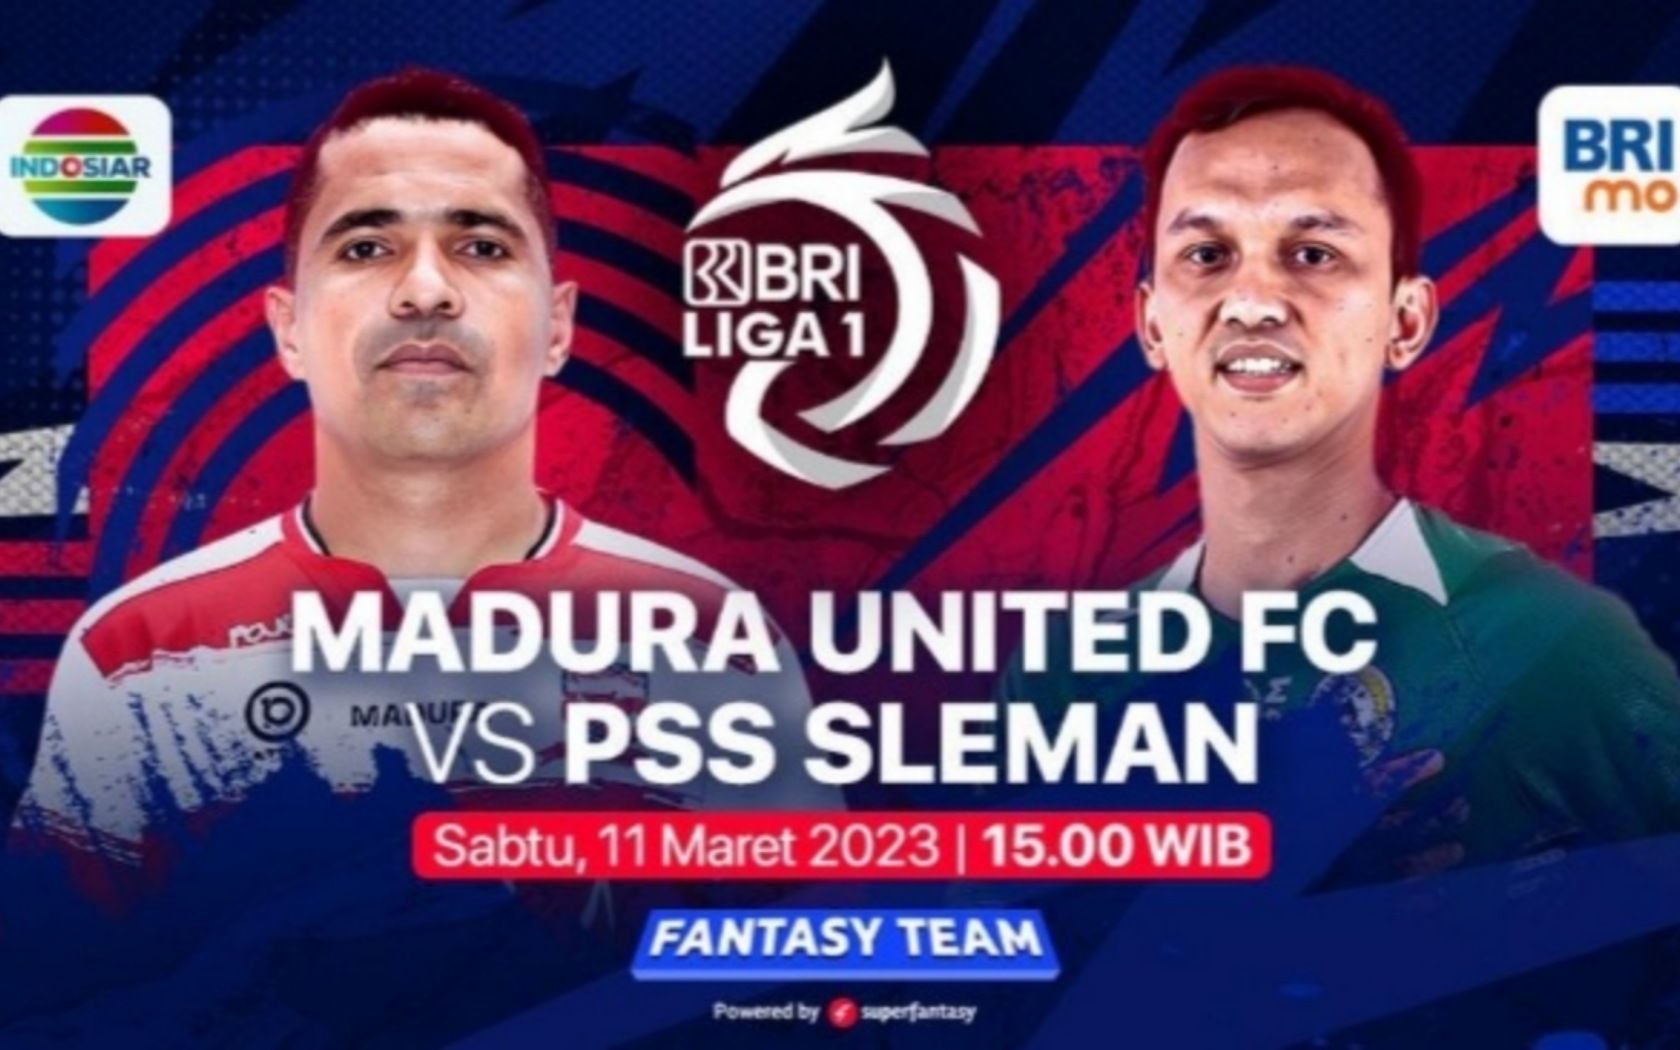 Prediksi formasi susunan pemain Madura United vs PSS Sleman pertandingan BRI Liga 1 hari ini